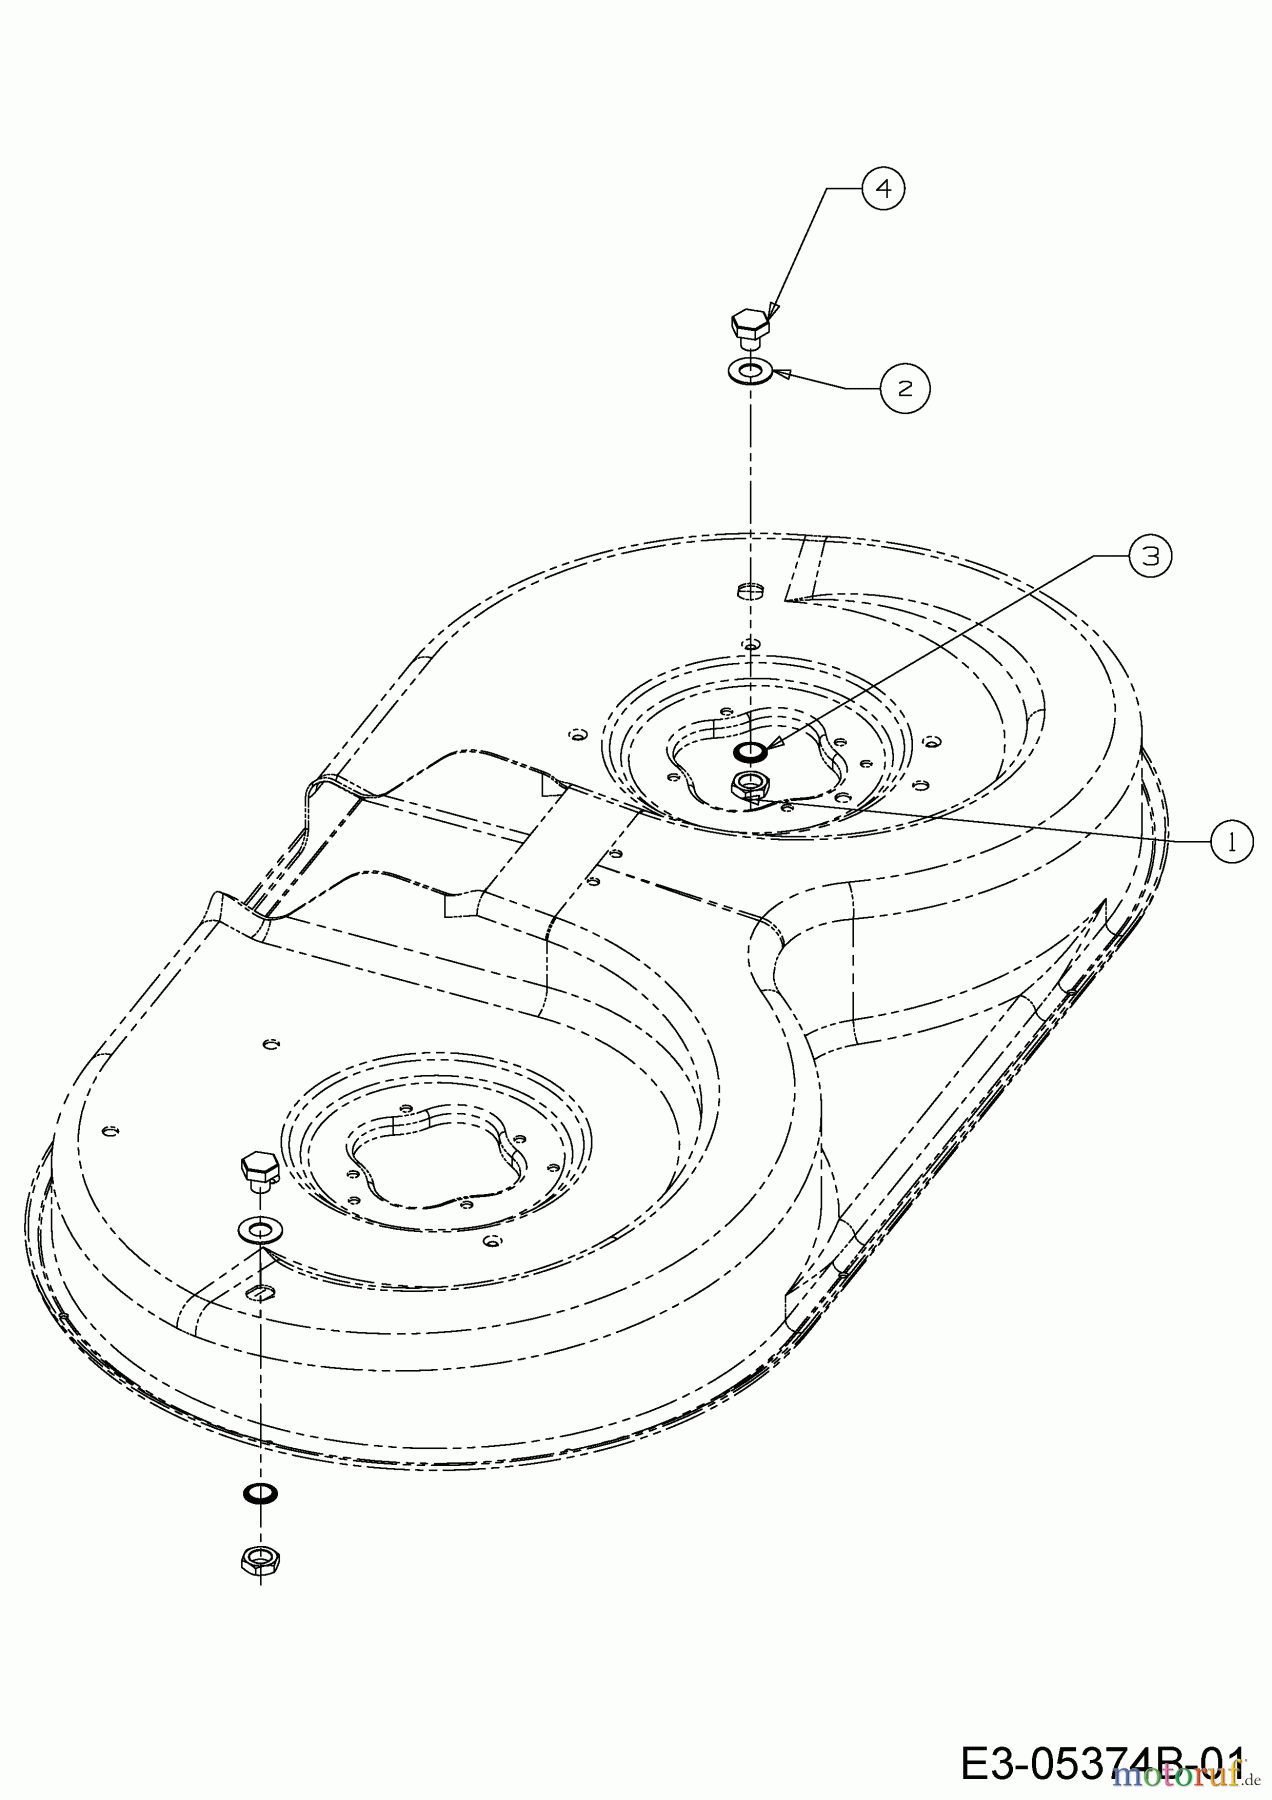  Dormak Rasentraktoren TX 36 T 13HH76SE699  (2017) Verschlussdeckel Waschdüse Mähwerk